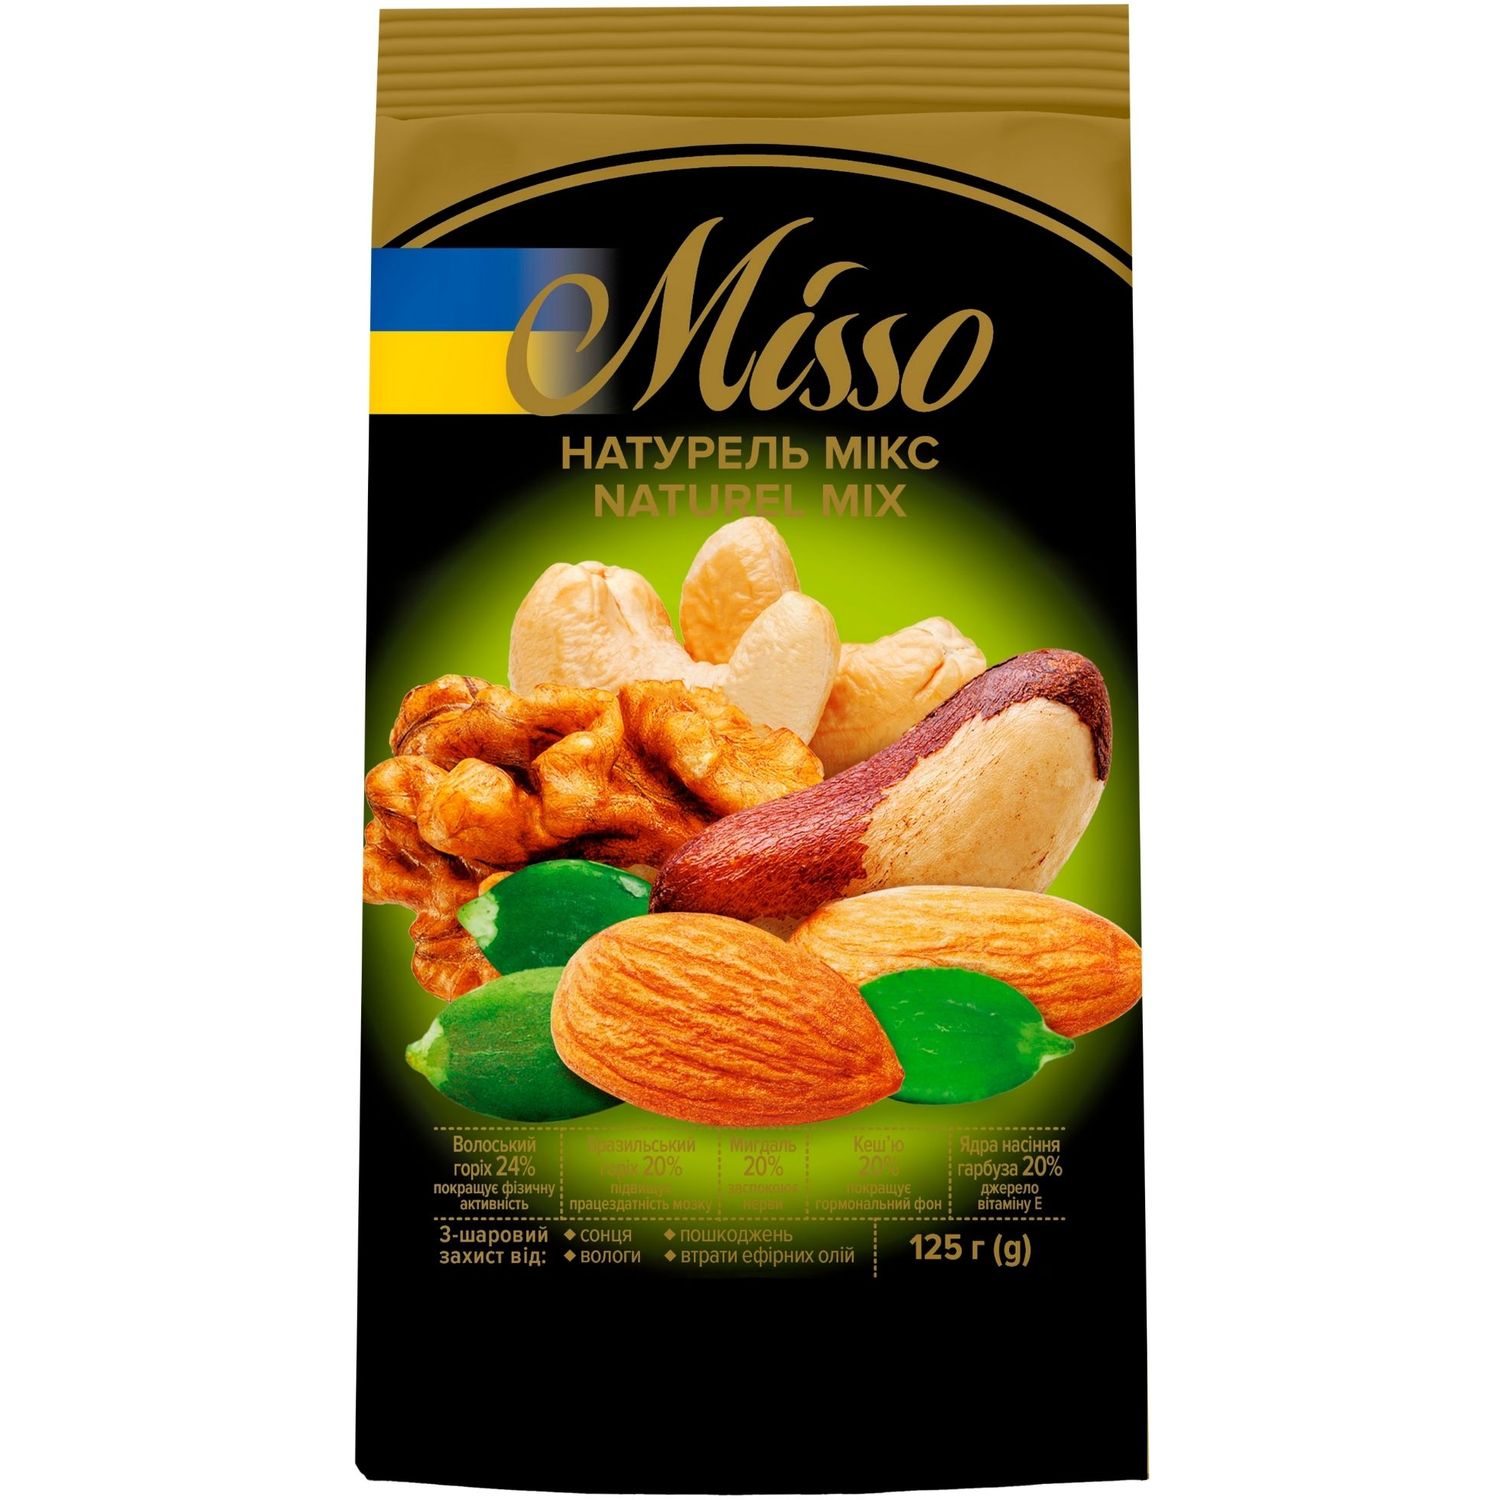 Ассорти сушеных орехов Misso Naturel Mix 125 г - фото 1